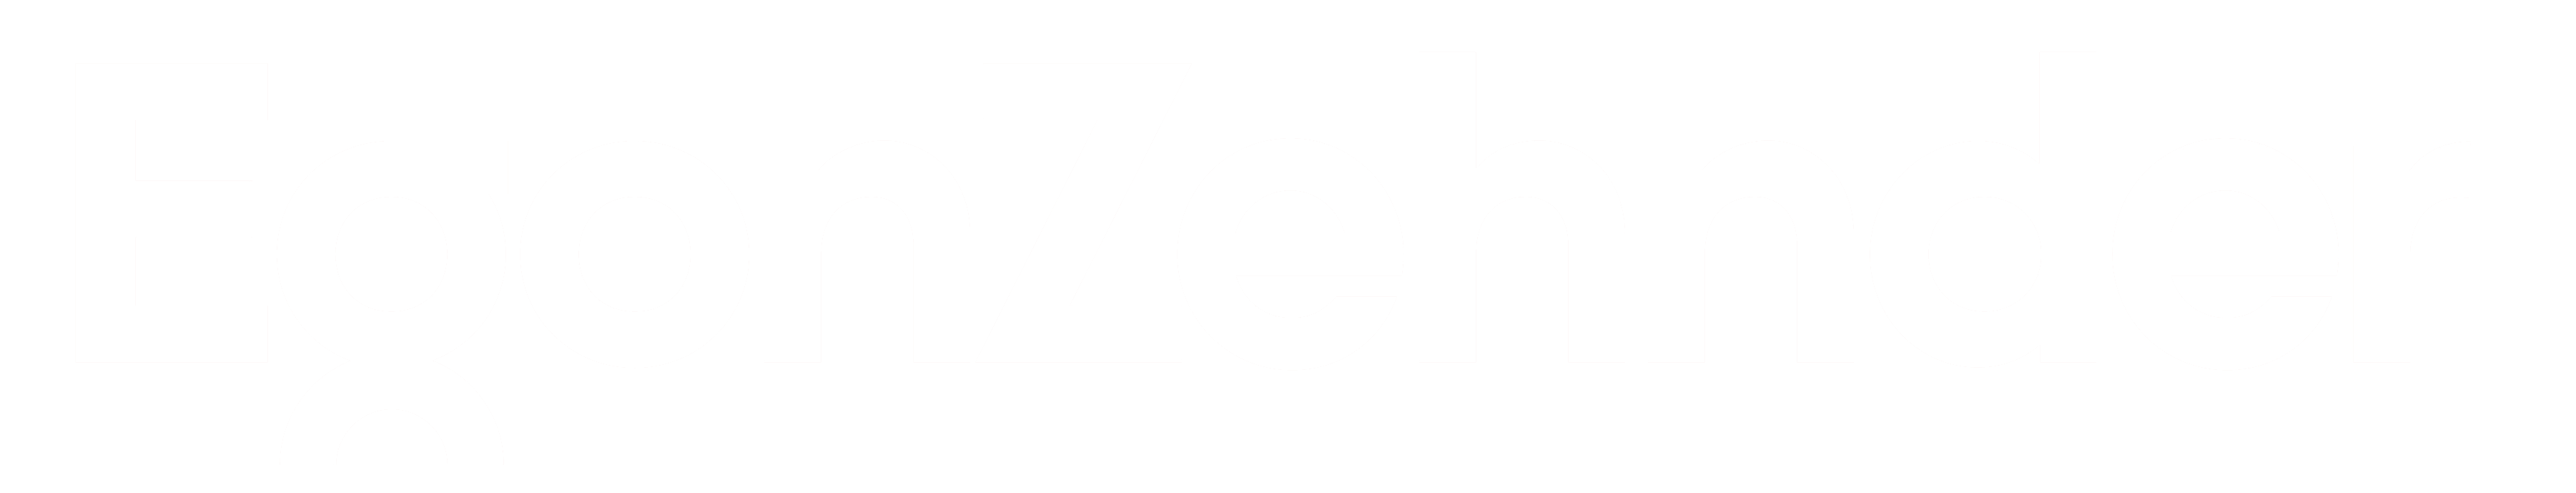 Egon Zenhnder Alumni Logo